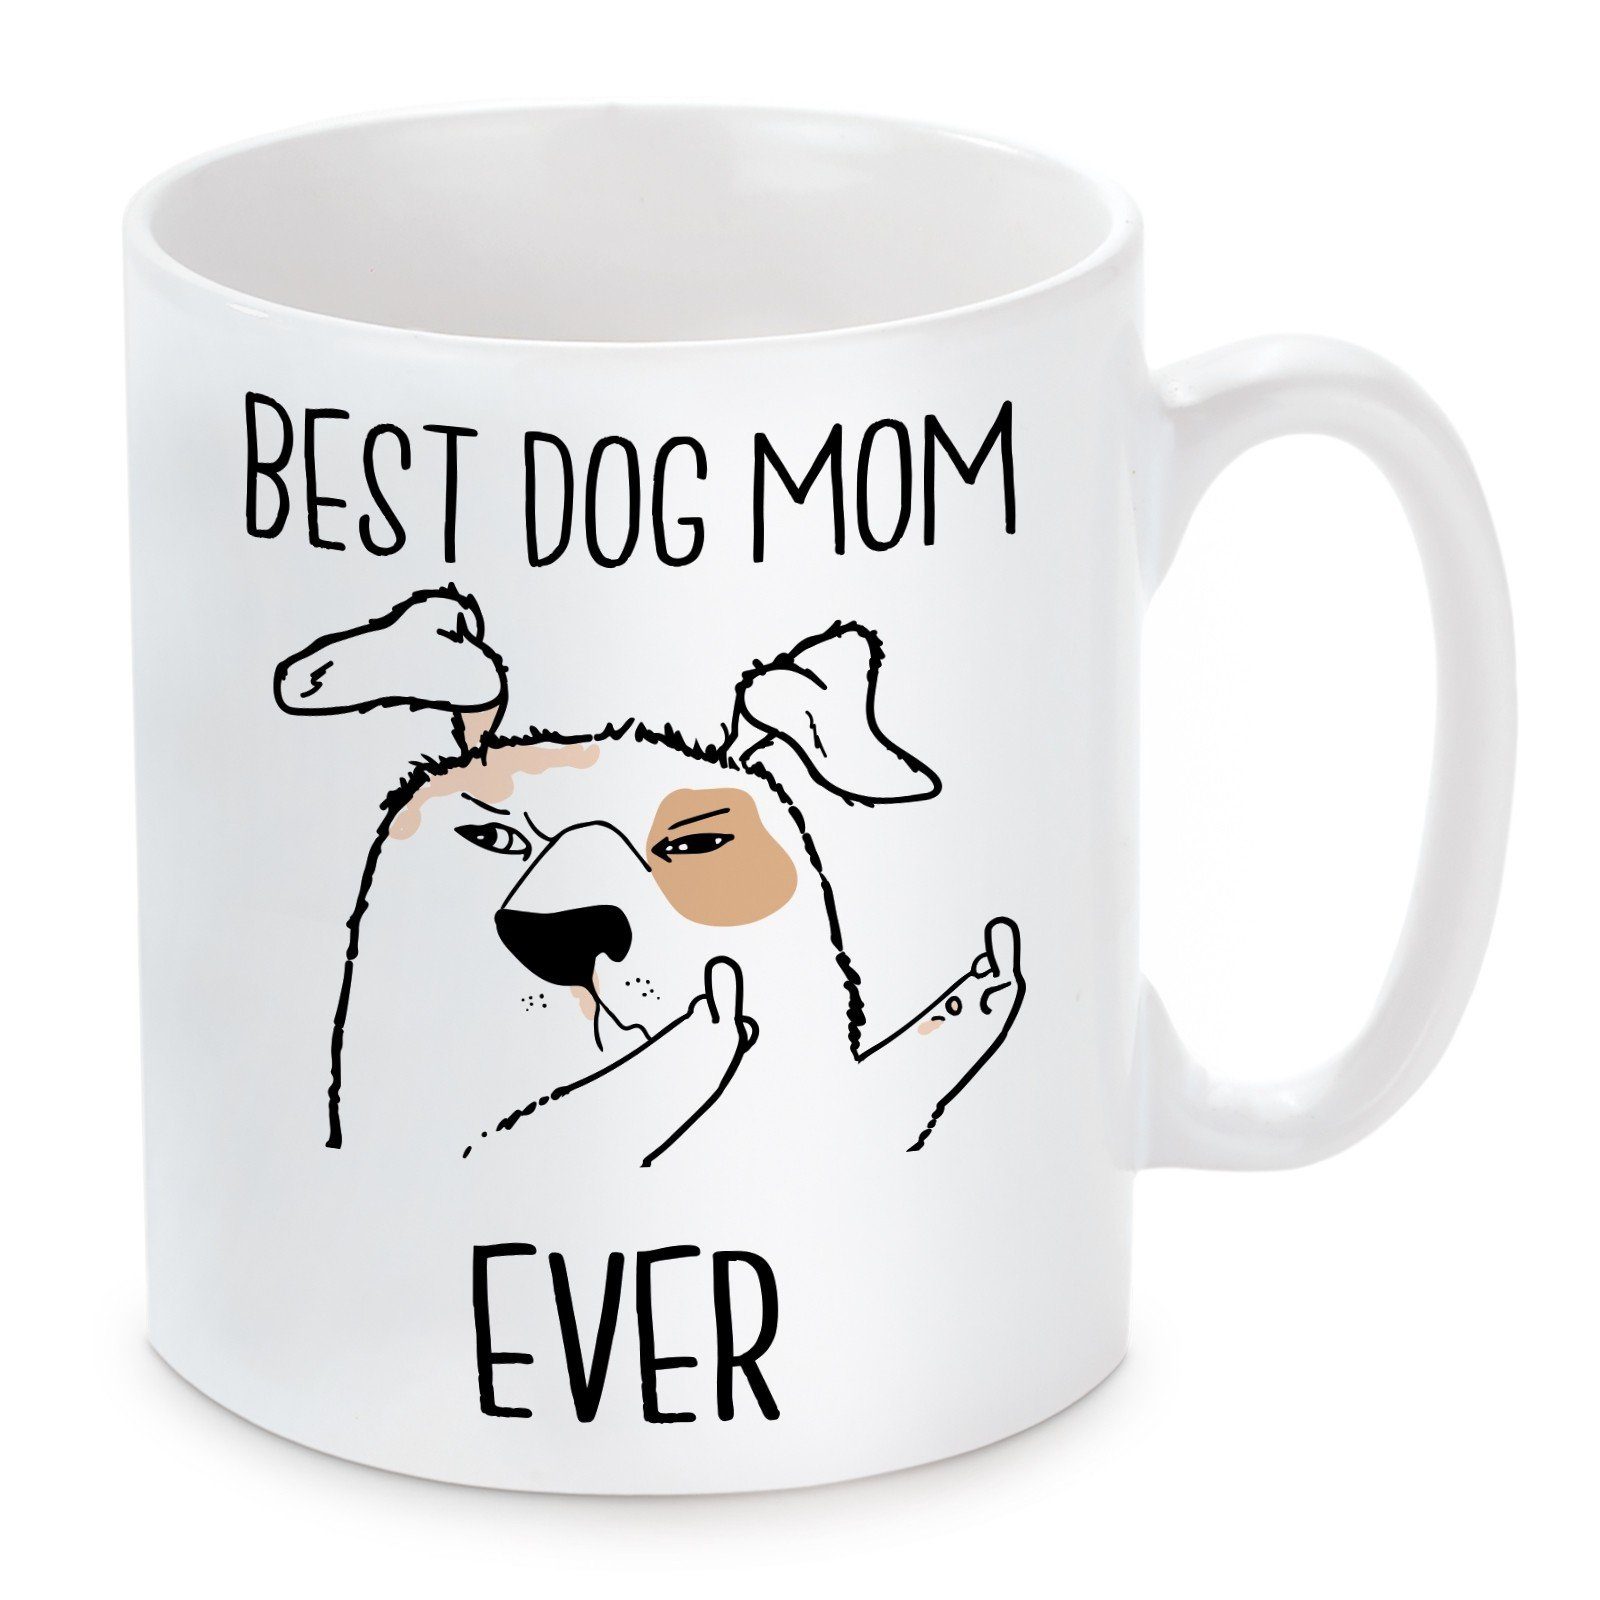 Herzbotschaft Tasse Kaffeebecher Mom Kaffeetasse Dog und mikrowellengeeignet mit Keramik, spülmaschinenfest Ever, Motiv Best